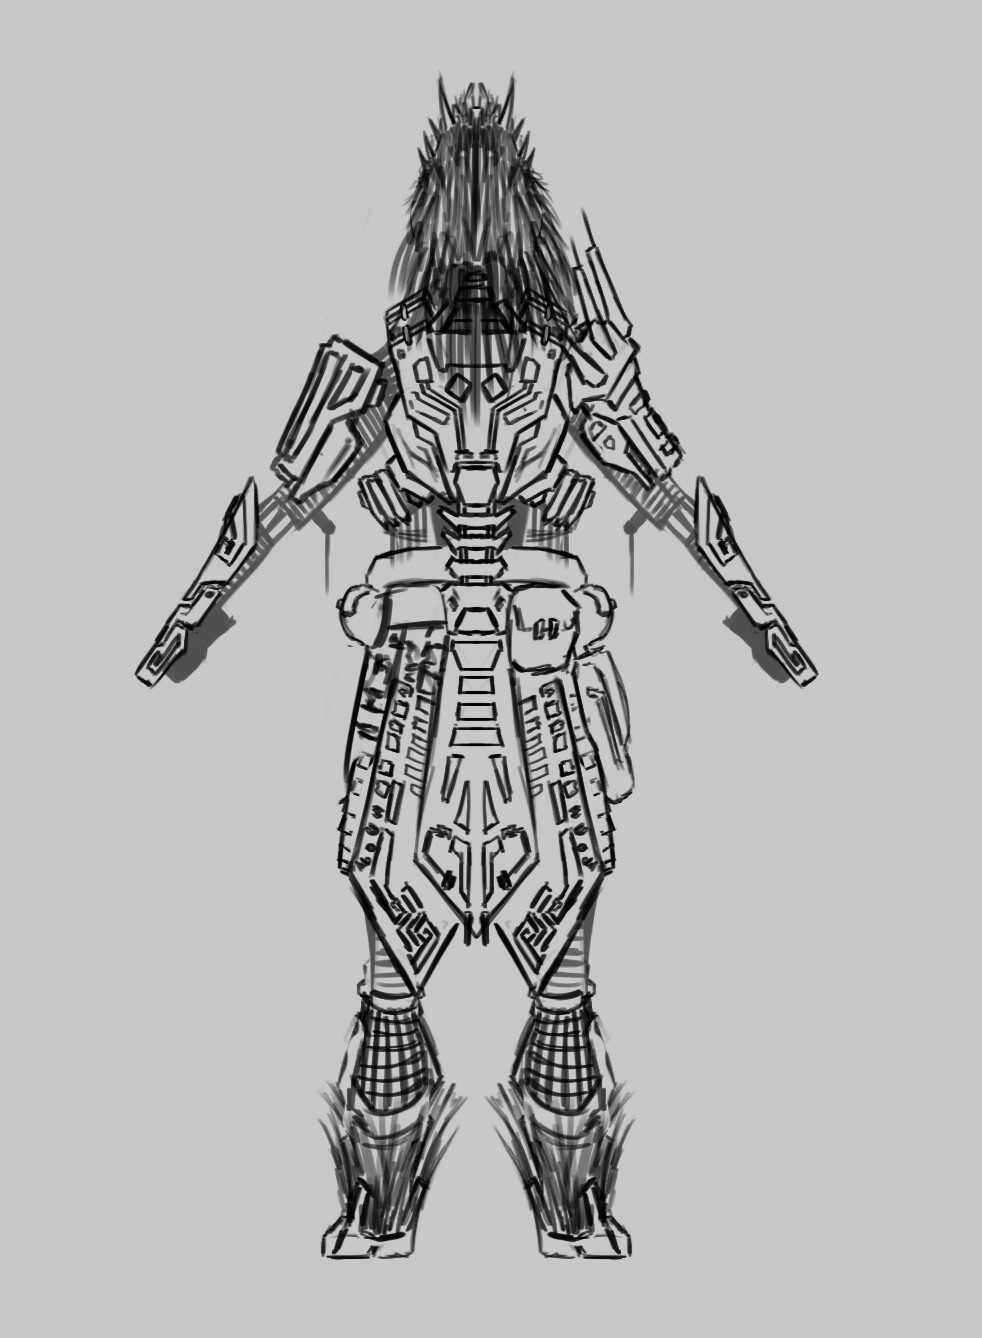 Big brother armor sketch back
